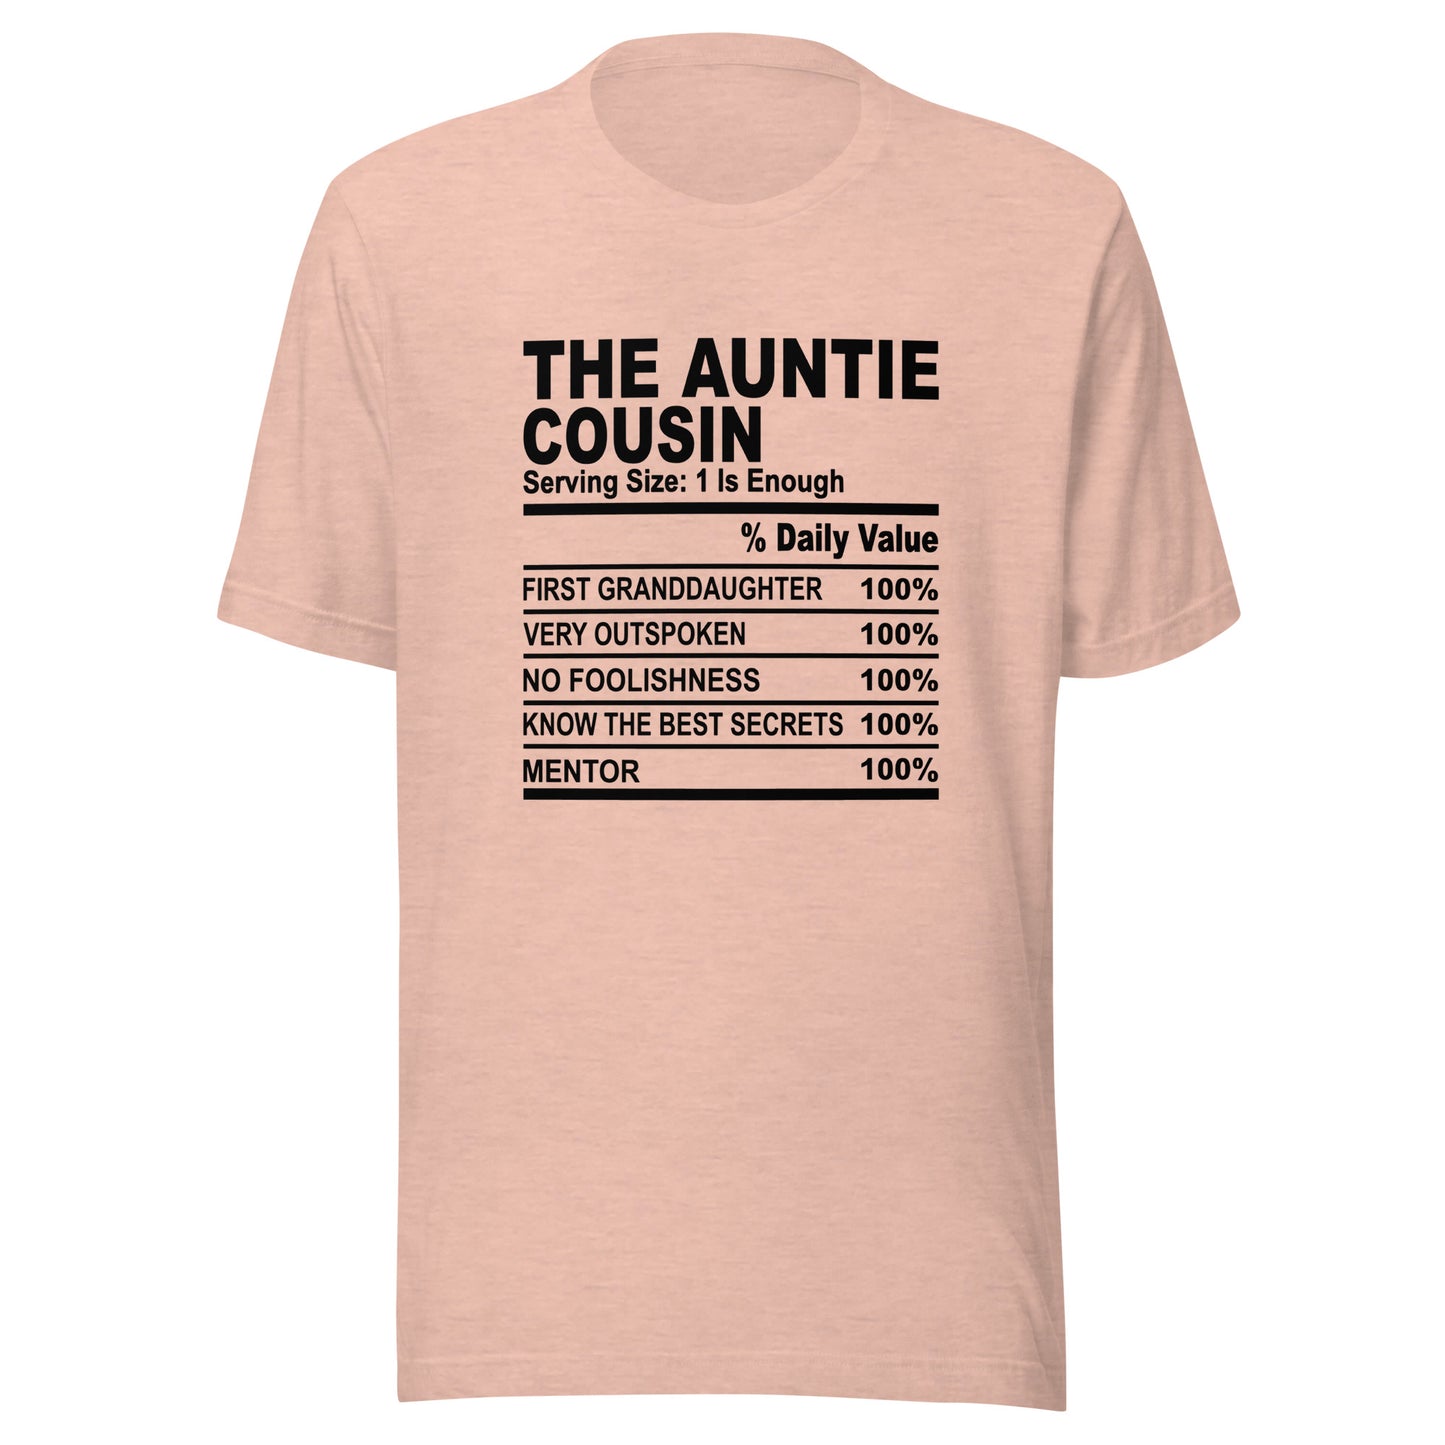 THE AUNTIE COUSIN - S-M - Unisex T-Shirt (black print)